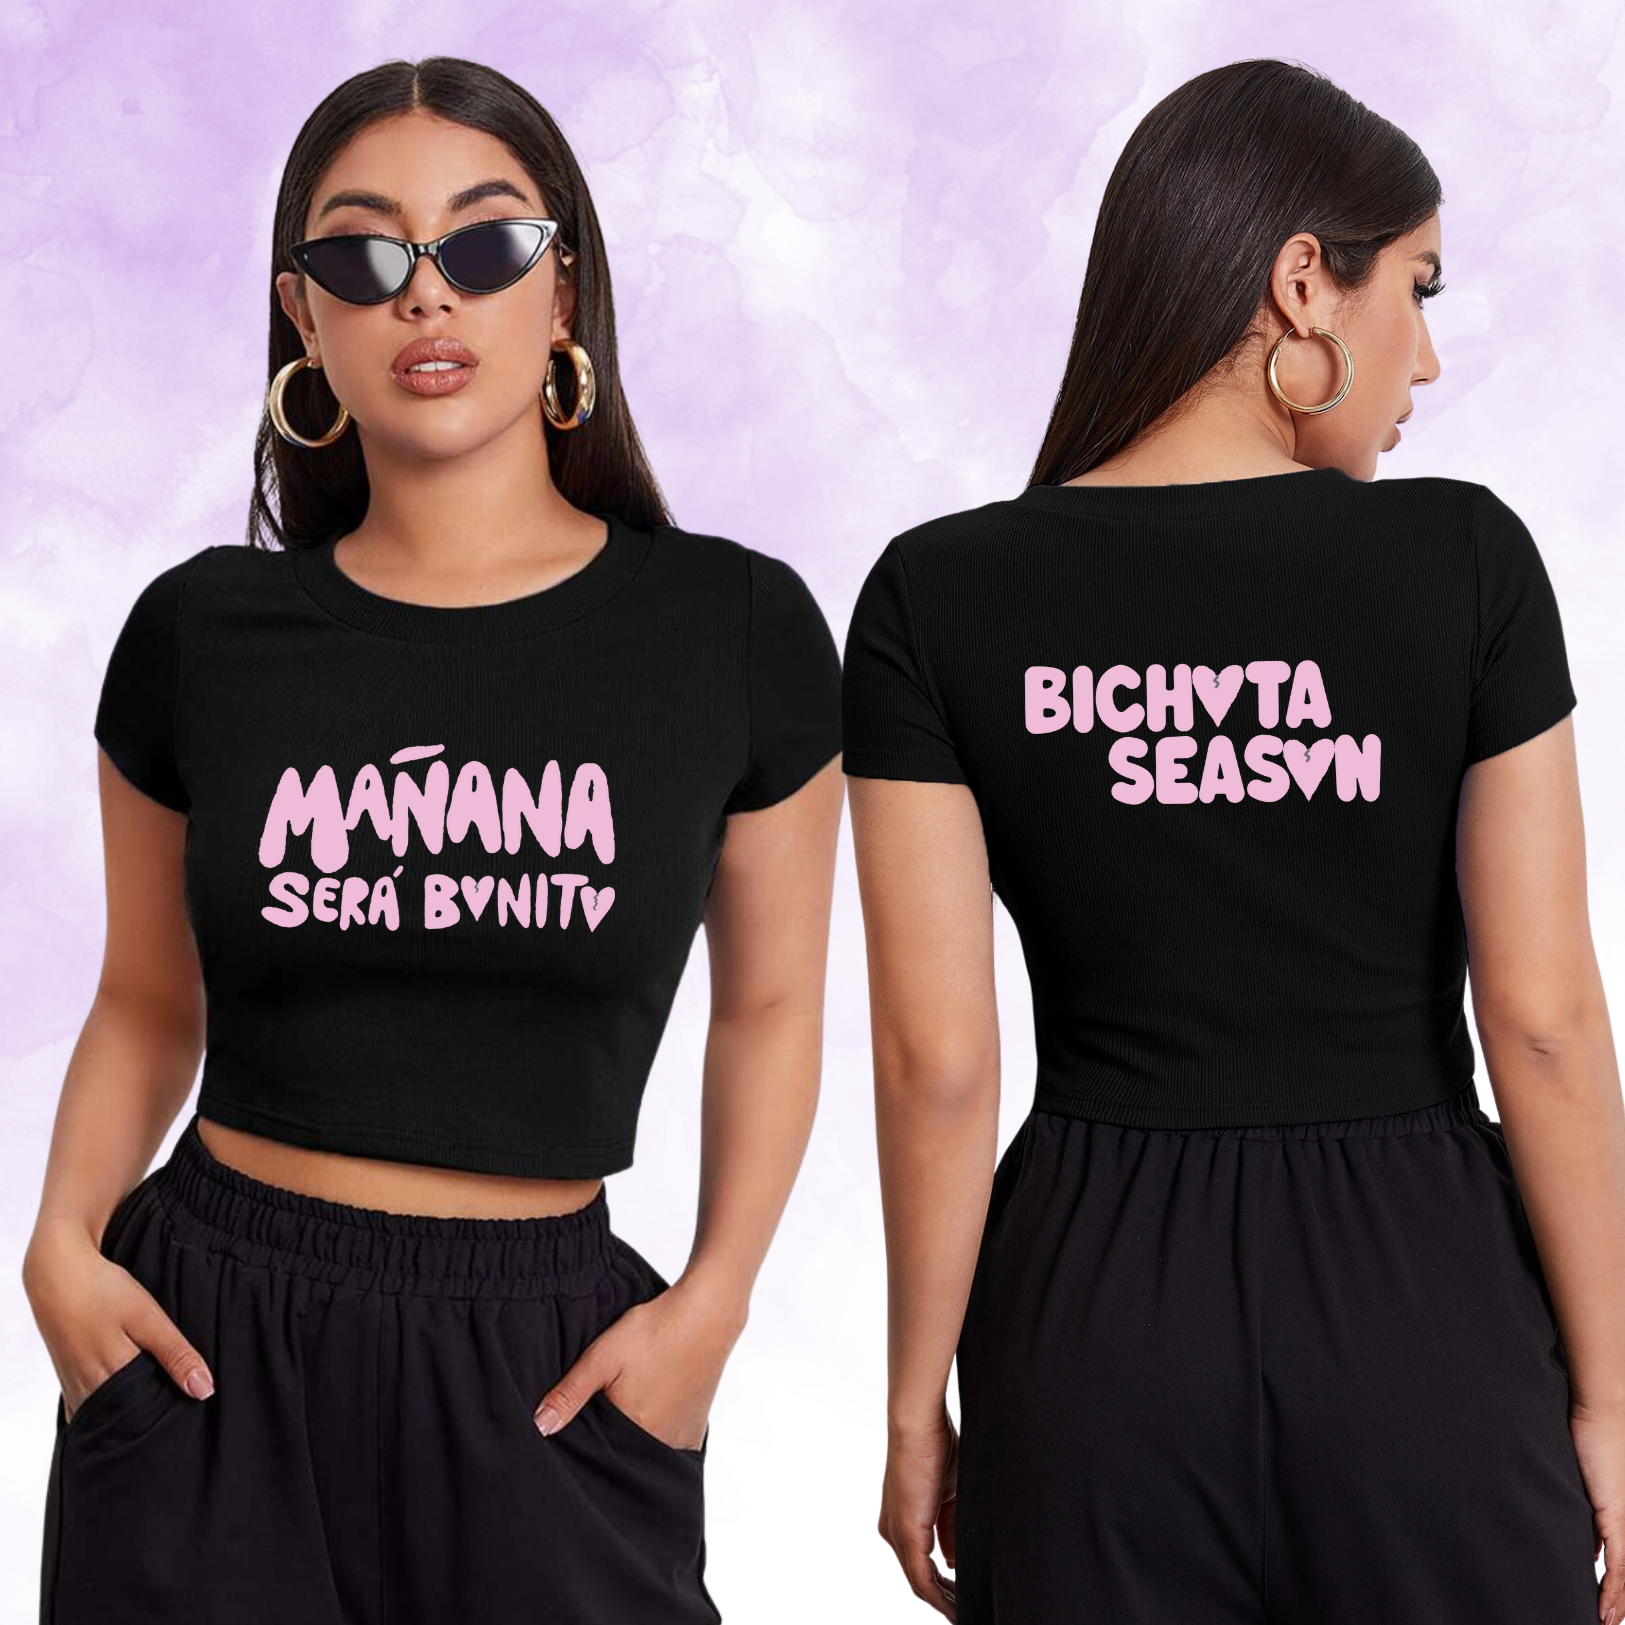 Sirenita shirts 🥰☺️ #mananaserabonito #karolg #bichota